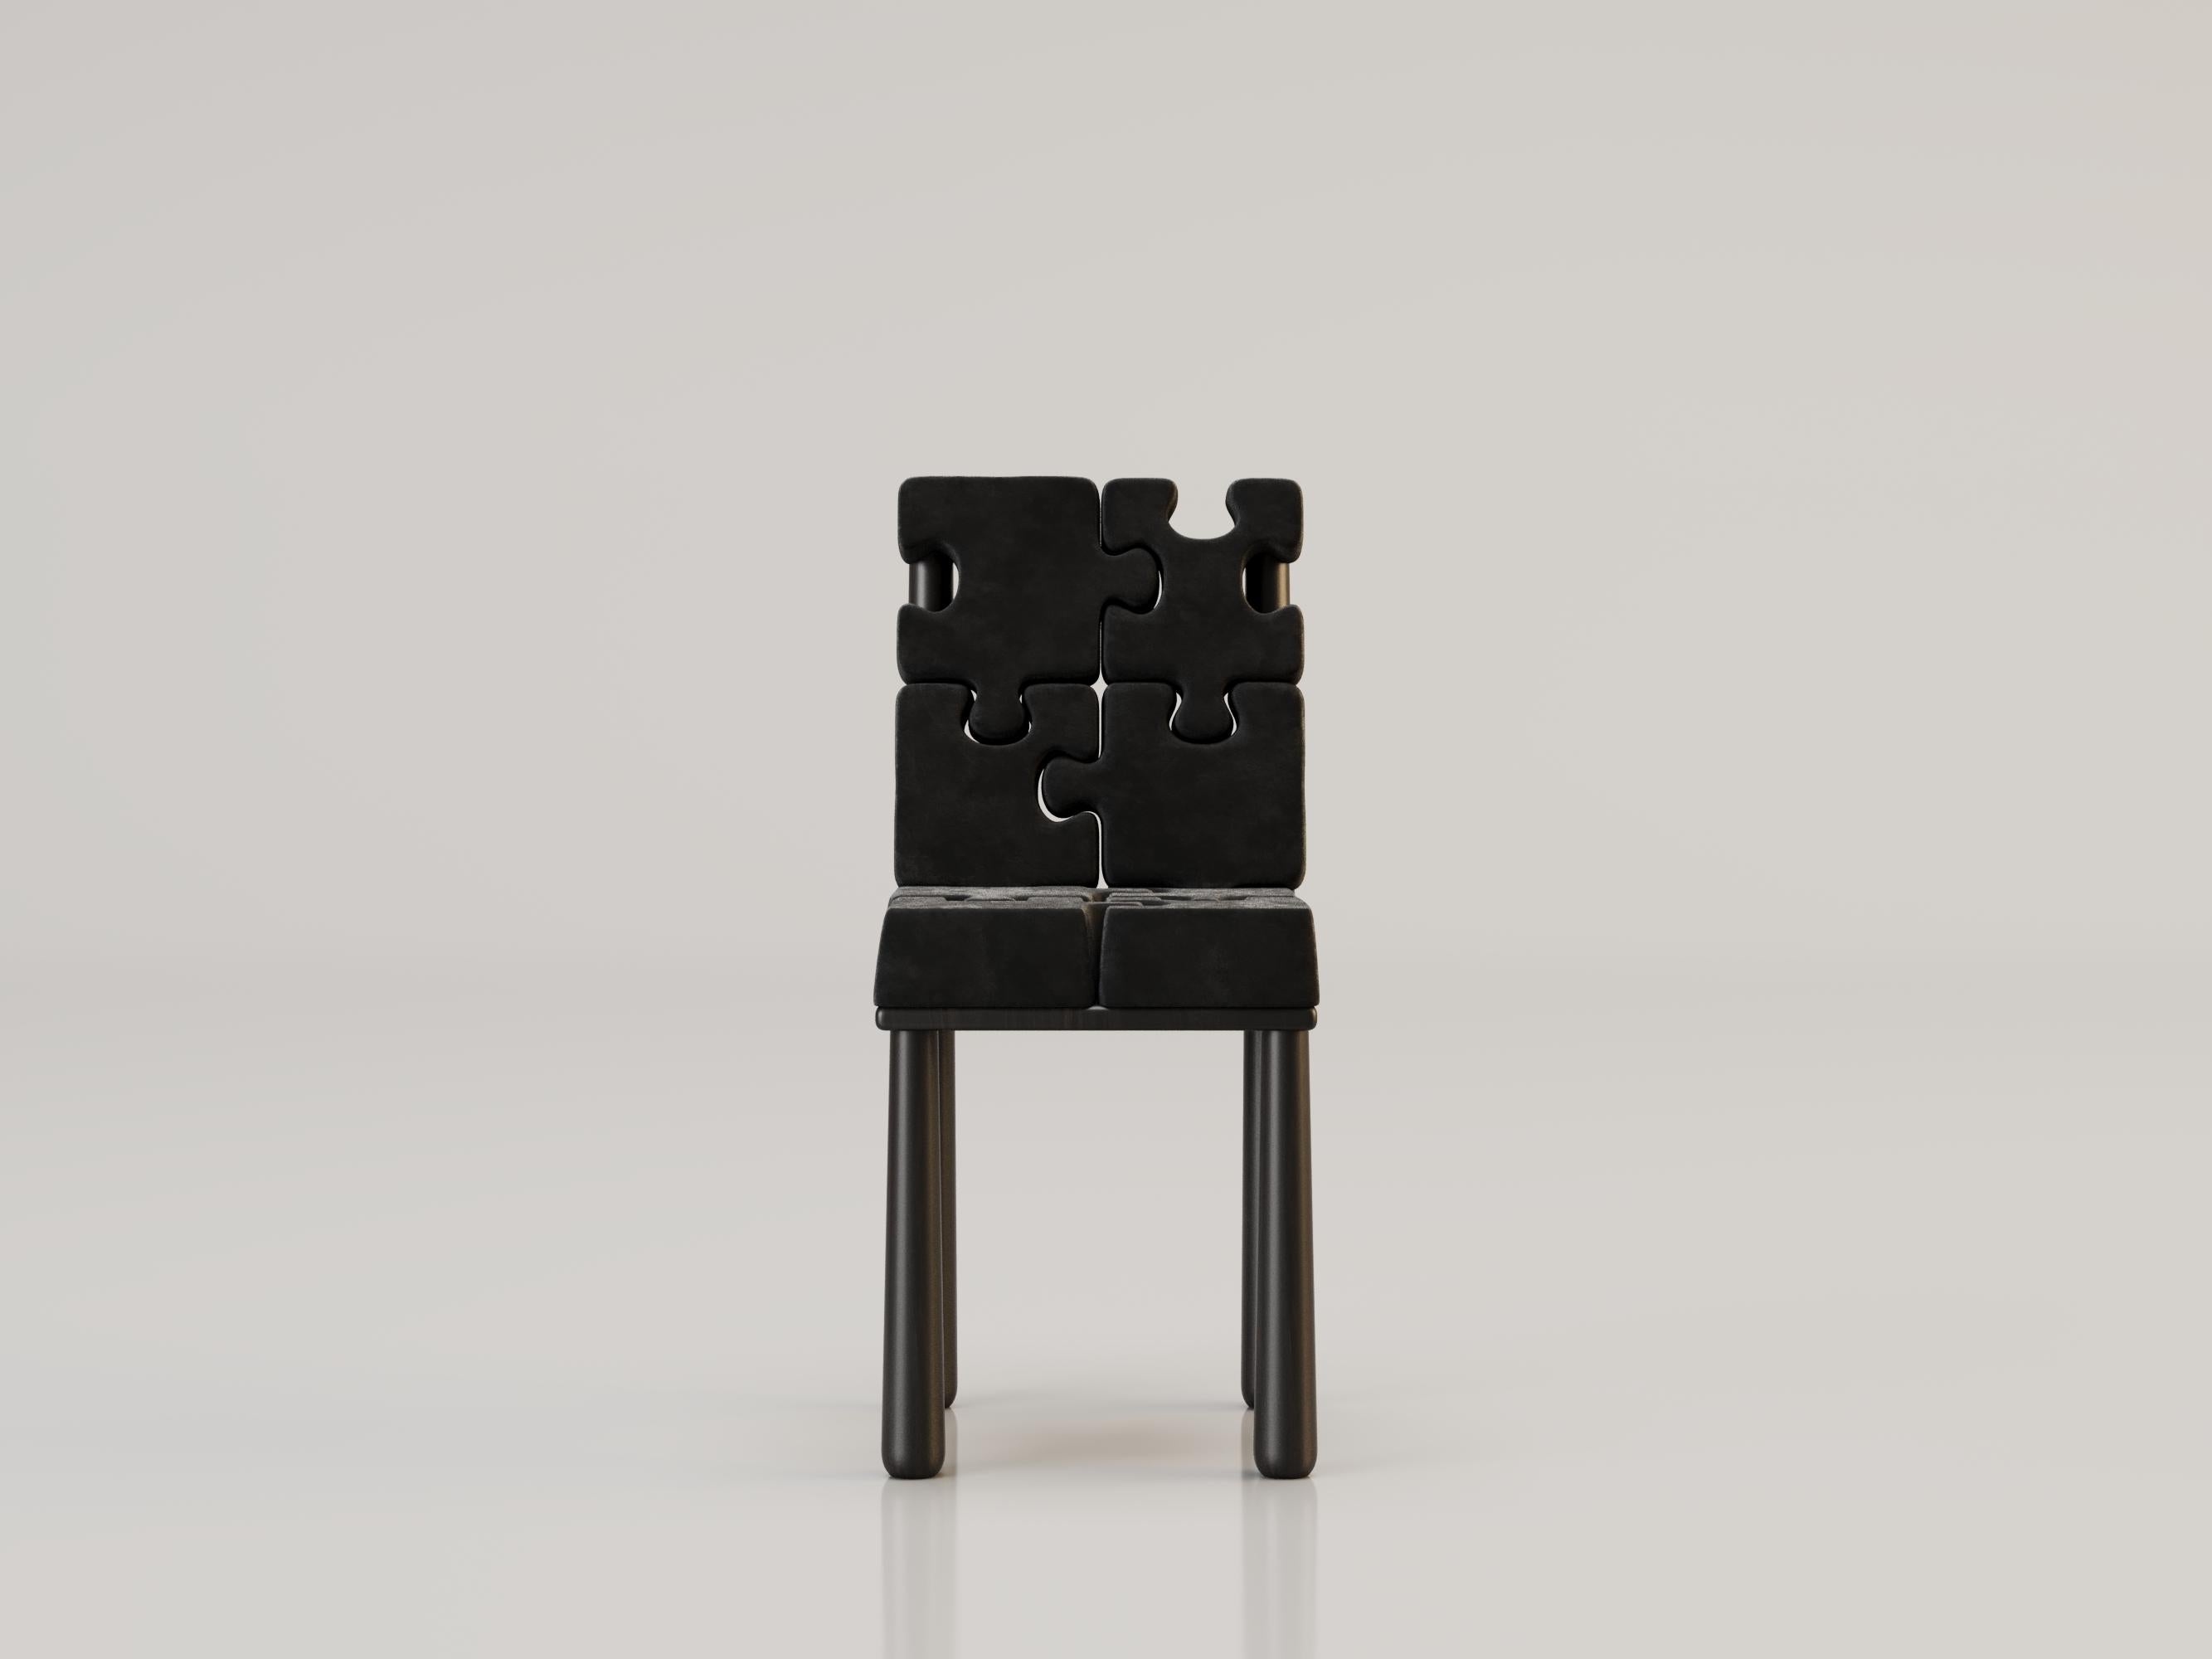 L'INSOLENTE Stuhl von Alexandre Ligios

WALNUSS UND SAMT

L 20 x B 20 X H 35

Der Stuhl im zeitgenössischen Design verfügt über einen massiven Eichenrahmen, der Ihrem Raum Wärme und Solidität verleiht. Seine Einzigartigkeit liegt in der wie